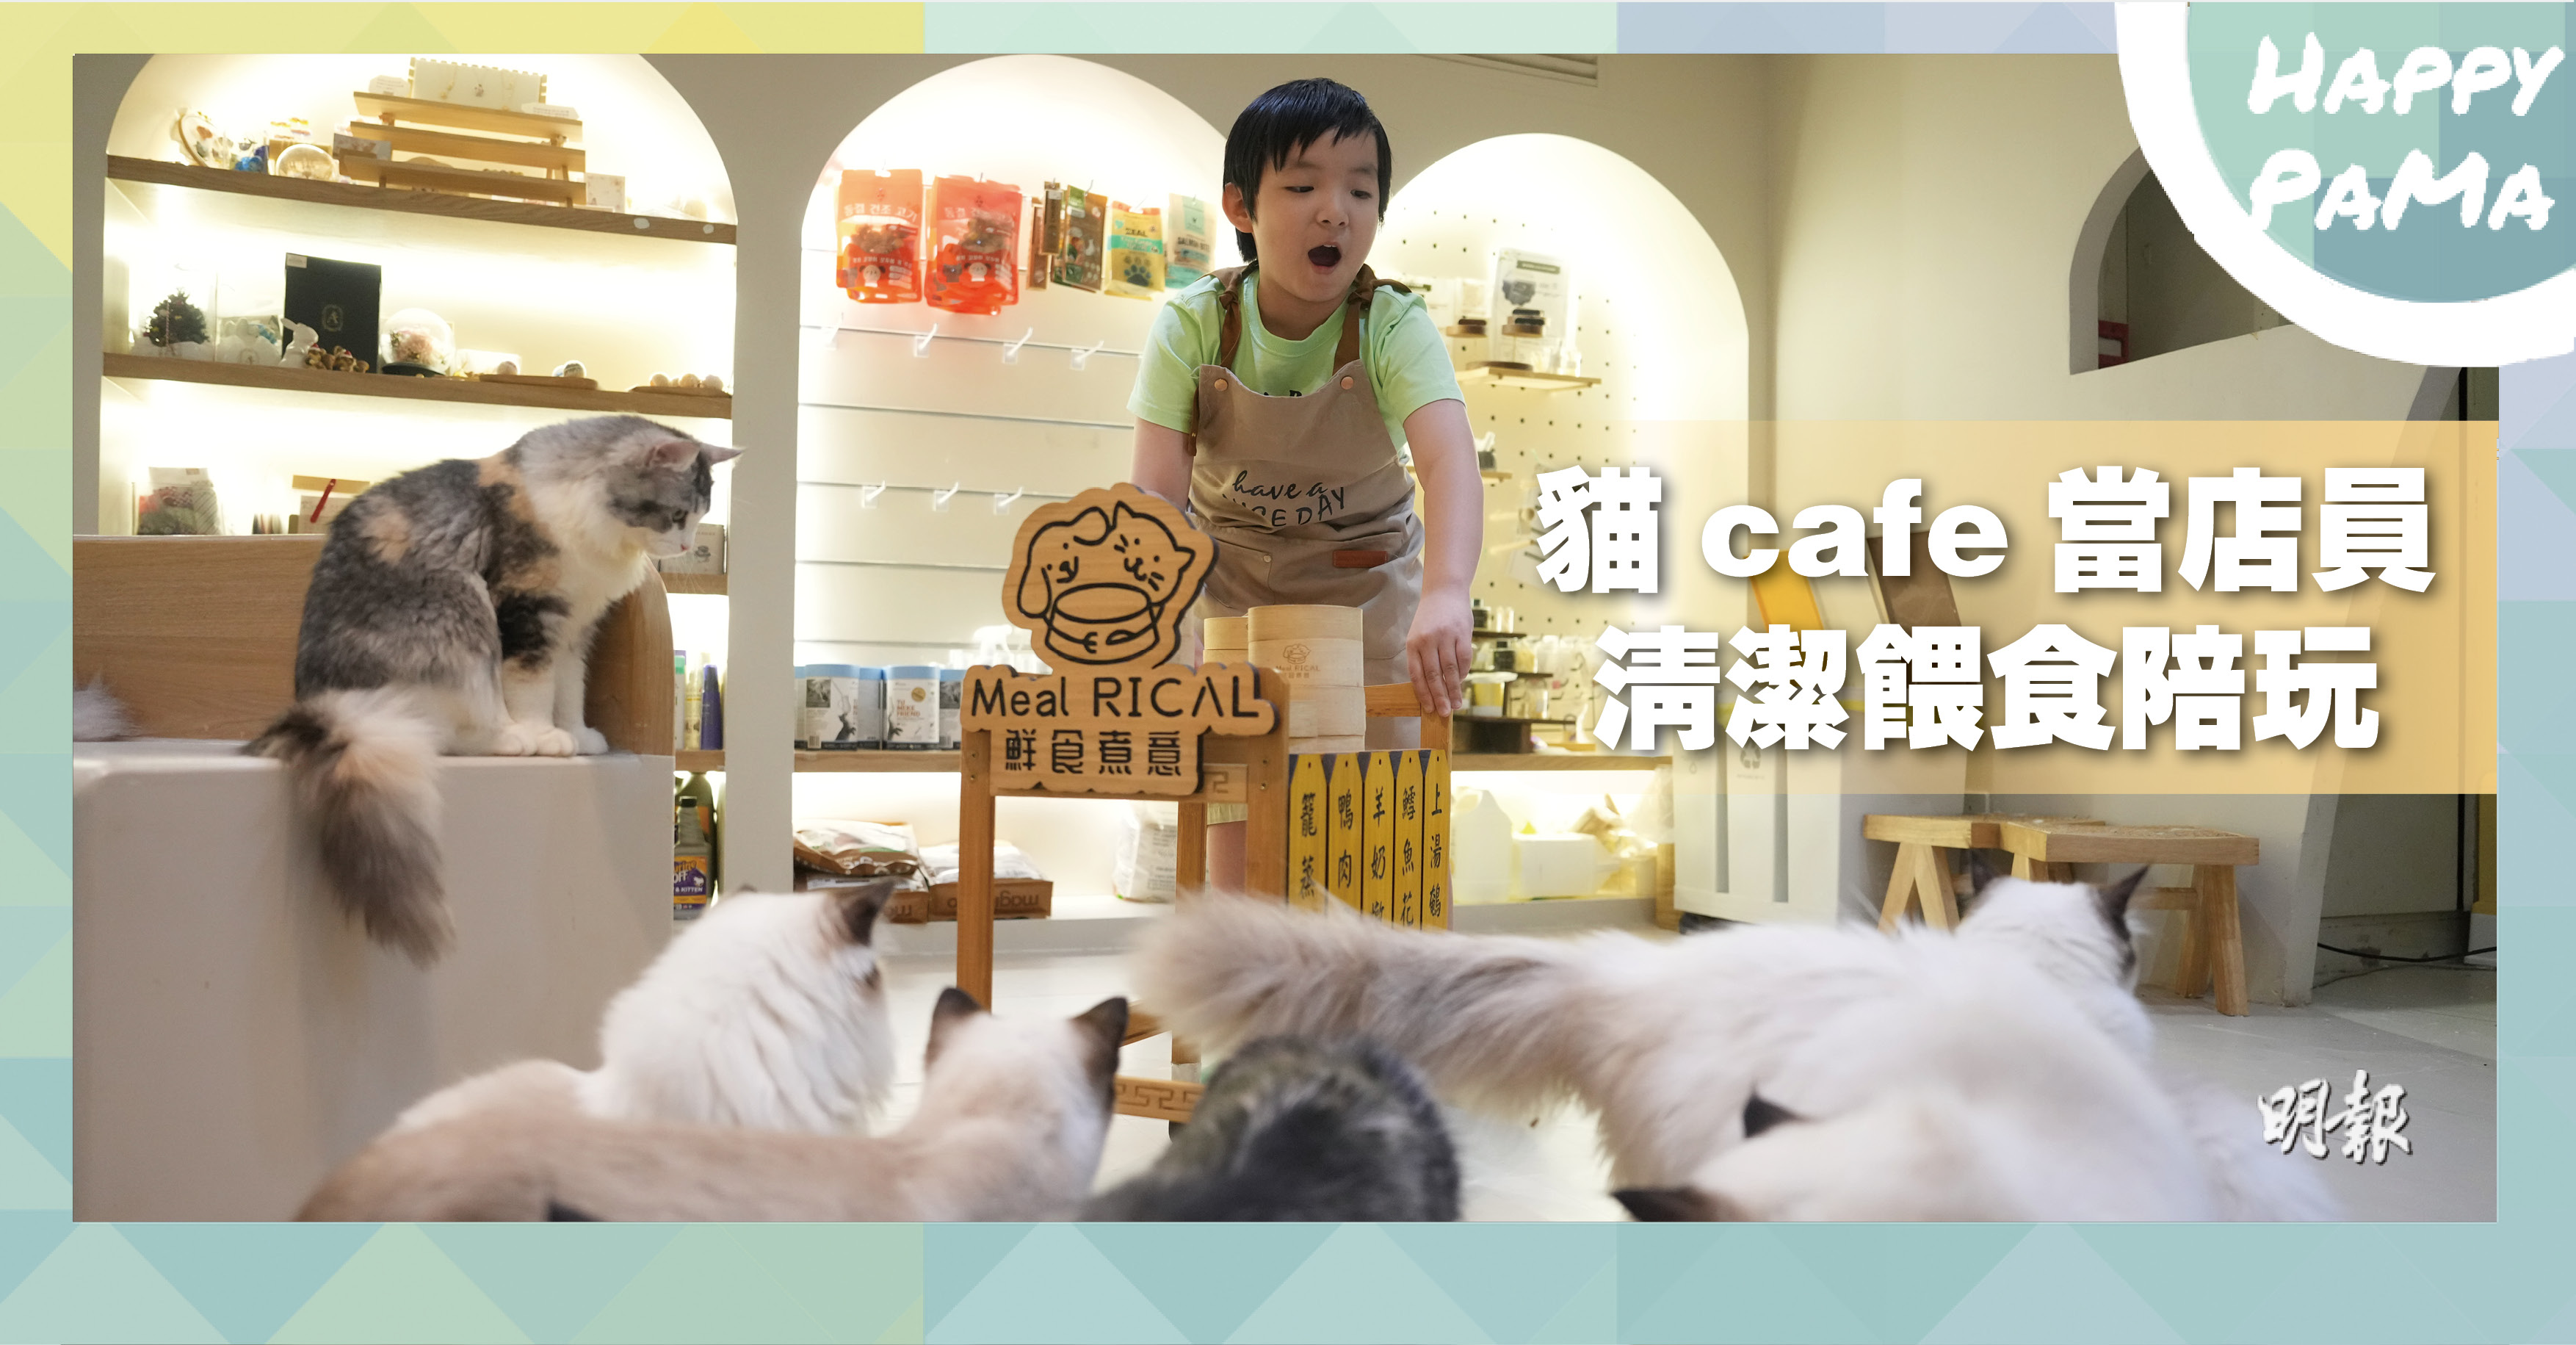 好去處：體驗照顧貓咪  學習待人接物  貓cafe當店員  清潔餵食陪玩